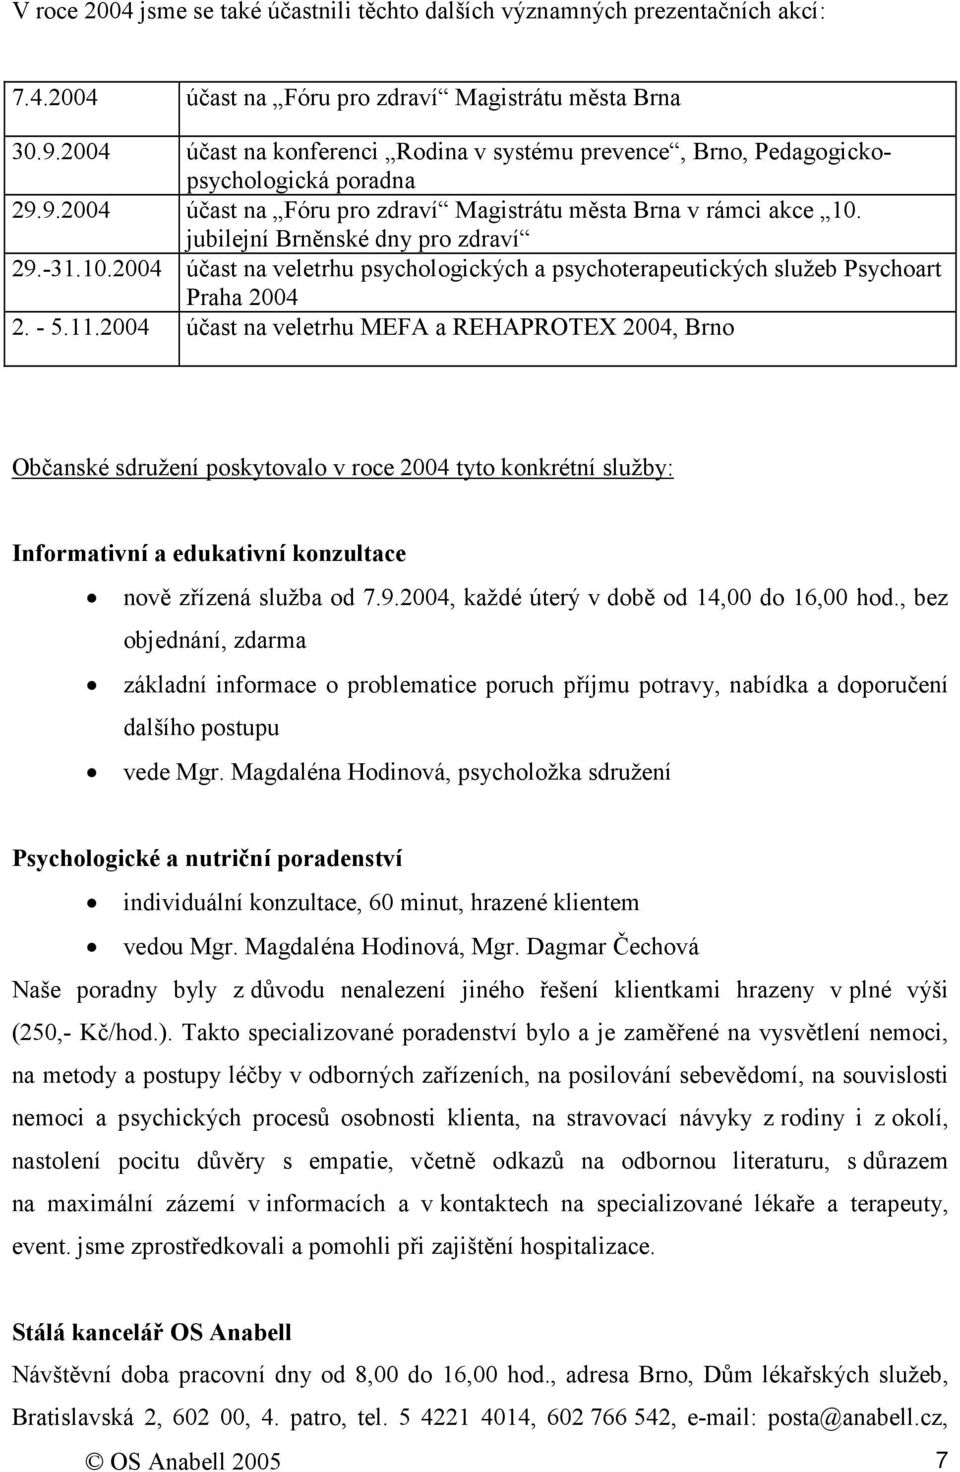 jubilejní Brněnské dny pro zdraví 29.-31.10.2004 účast na veletrhu psychologických a psychoterapeutických služeb Psychoart Praha 2004 2. - 5.11.